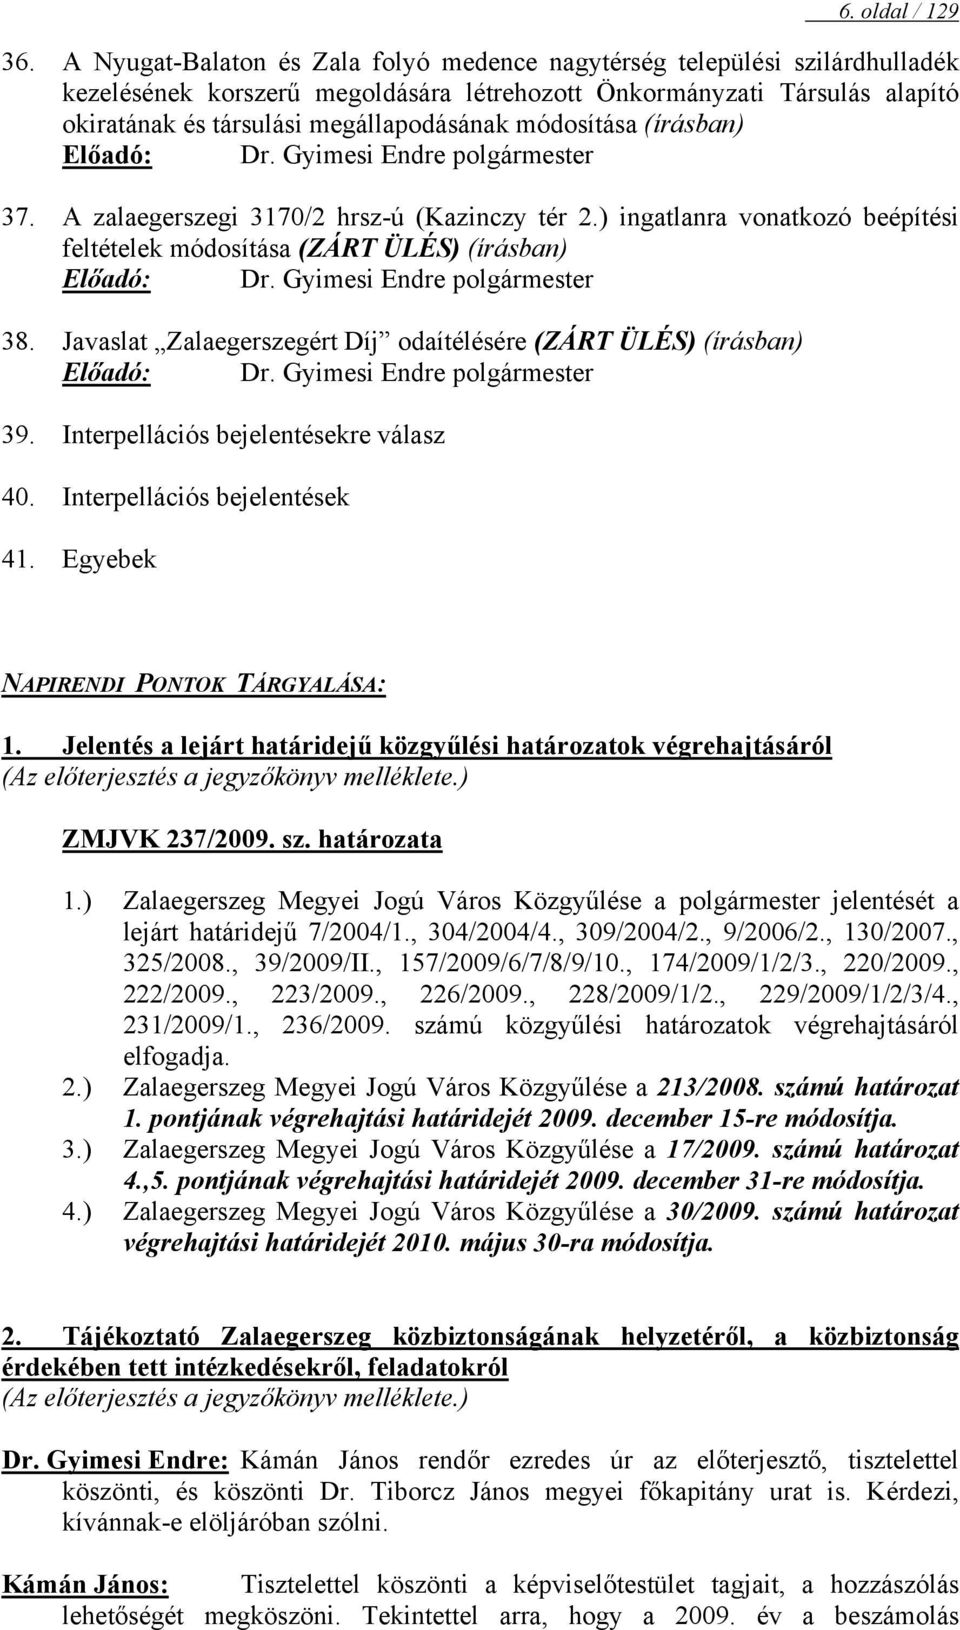 módosítása (írásban) Előadó: Dr. Gyimesi Endre polgármester 37. A zalaegerszegi 3170/2 hrsz-ú (Kazinczy tér 2.) ingatlanra vonatkozó beépítési feltételek módosítása (ZÁRT ÜLÉS) (írásban) Előadó: Dr.